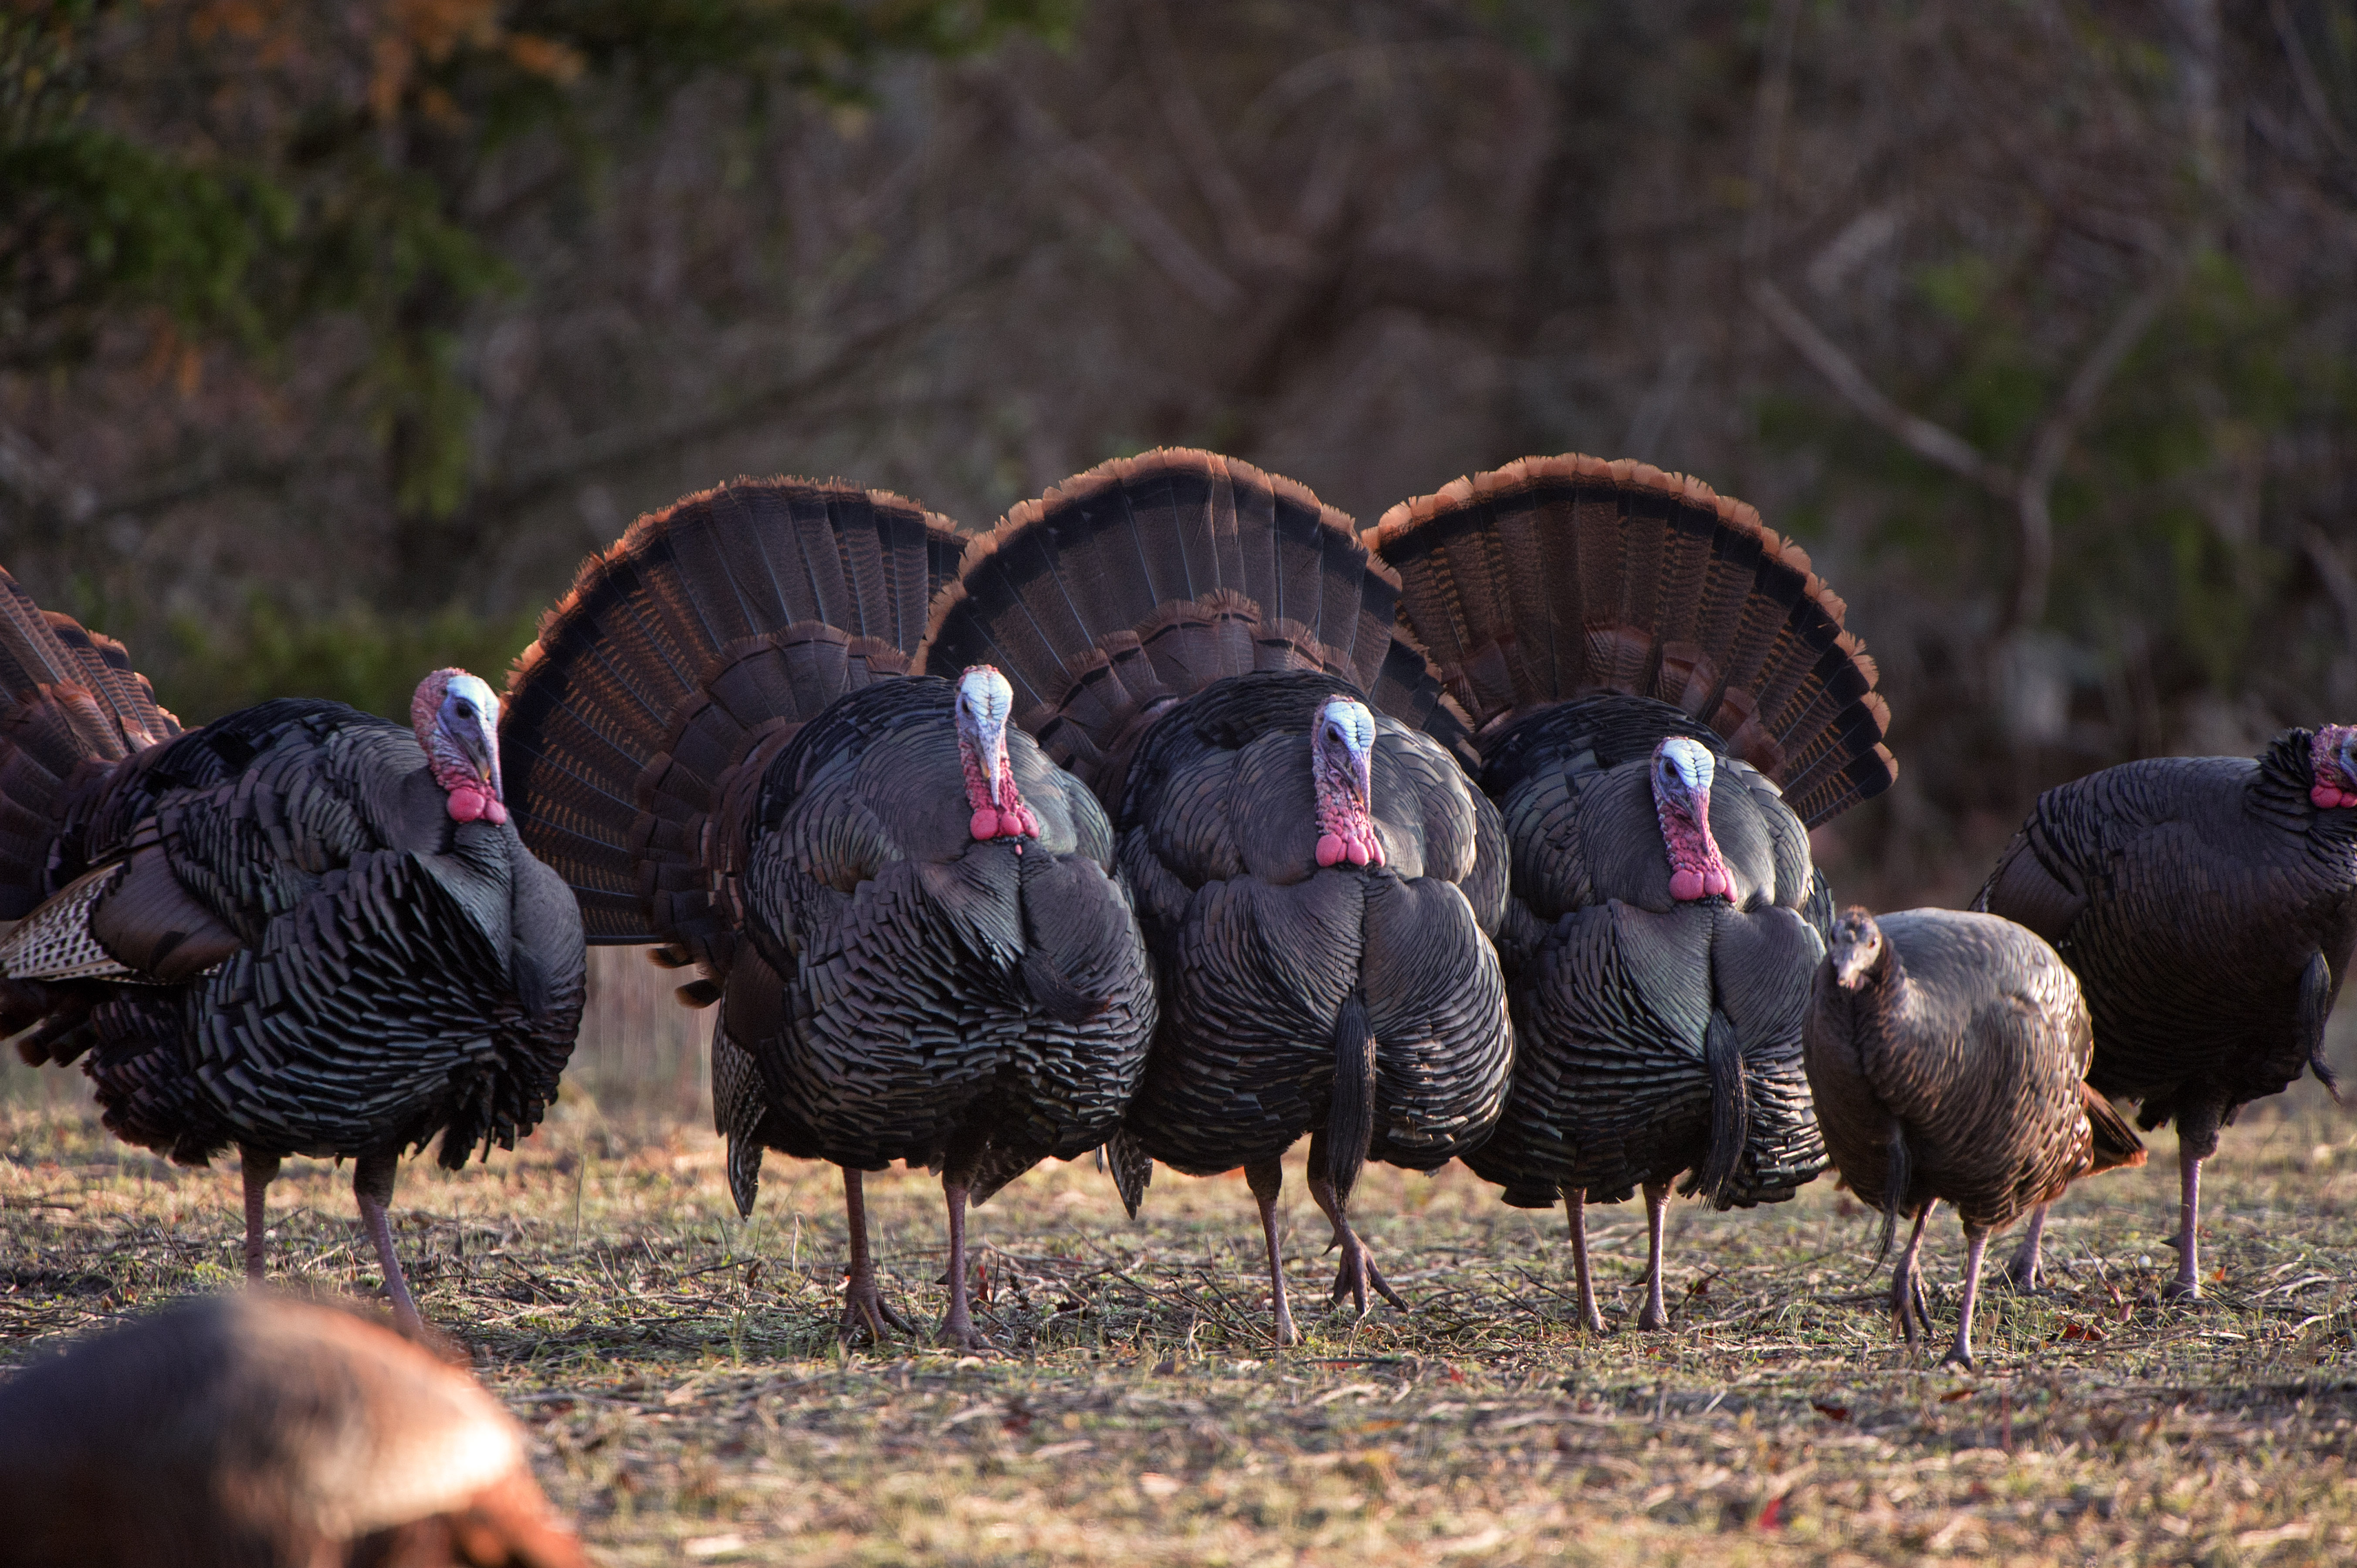 Spring Turkey Hunting Tips For A Safe Hunt